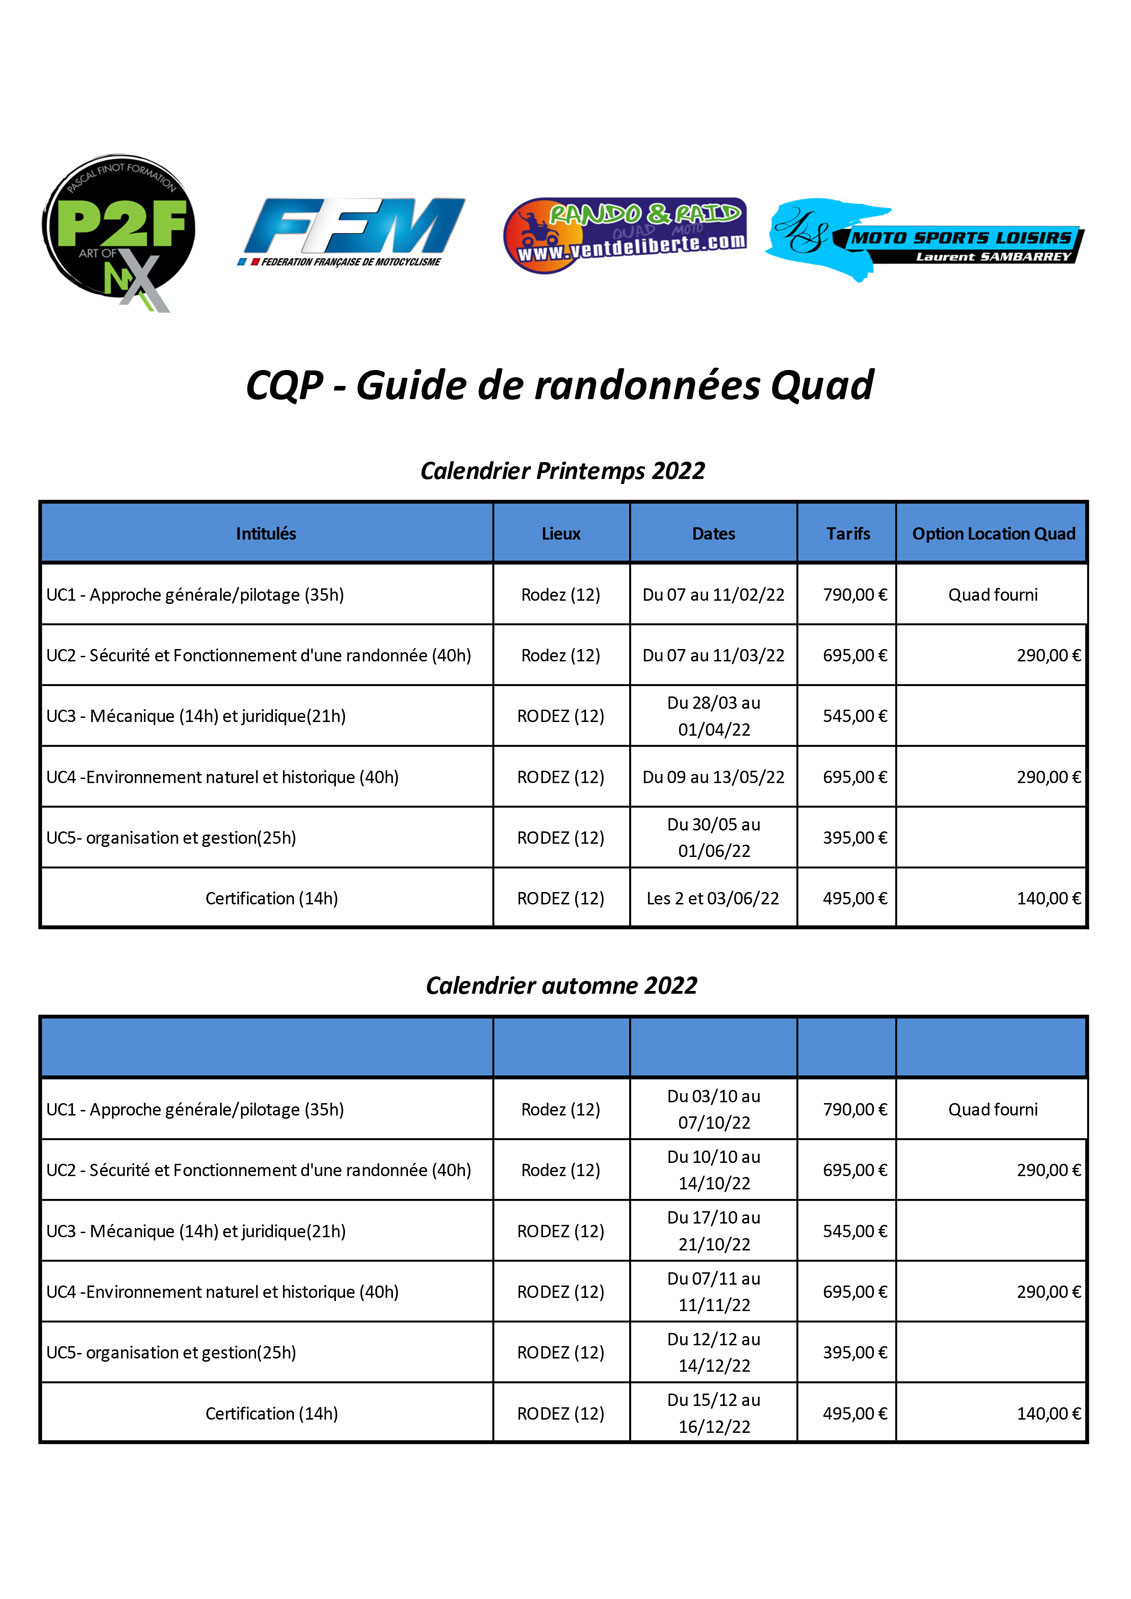 Calendrier-CQP-Quad-2022-1